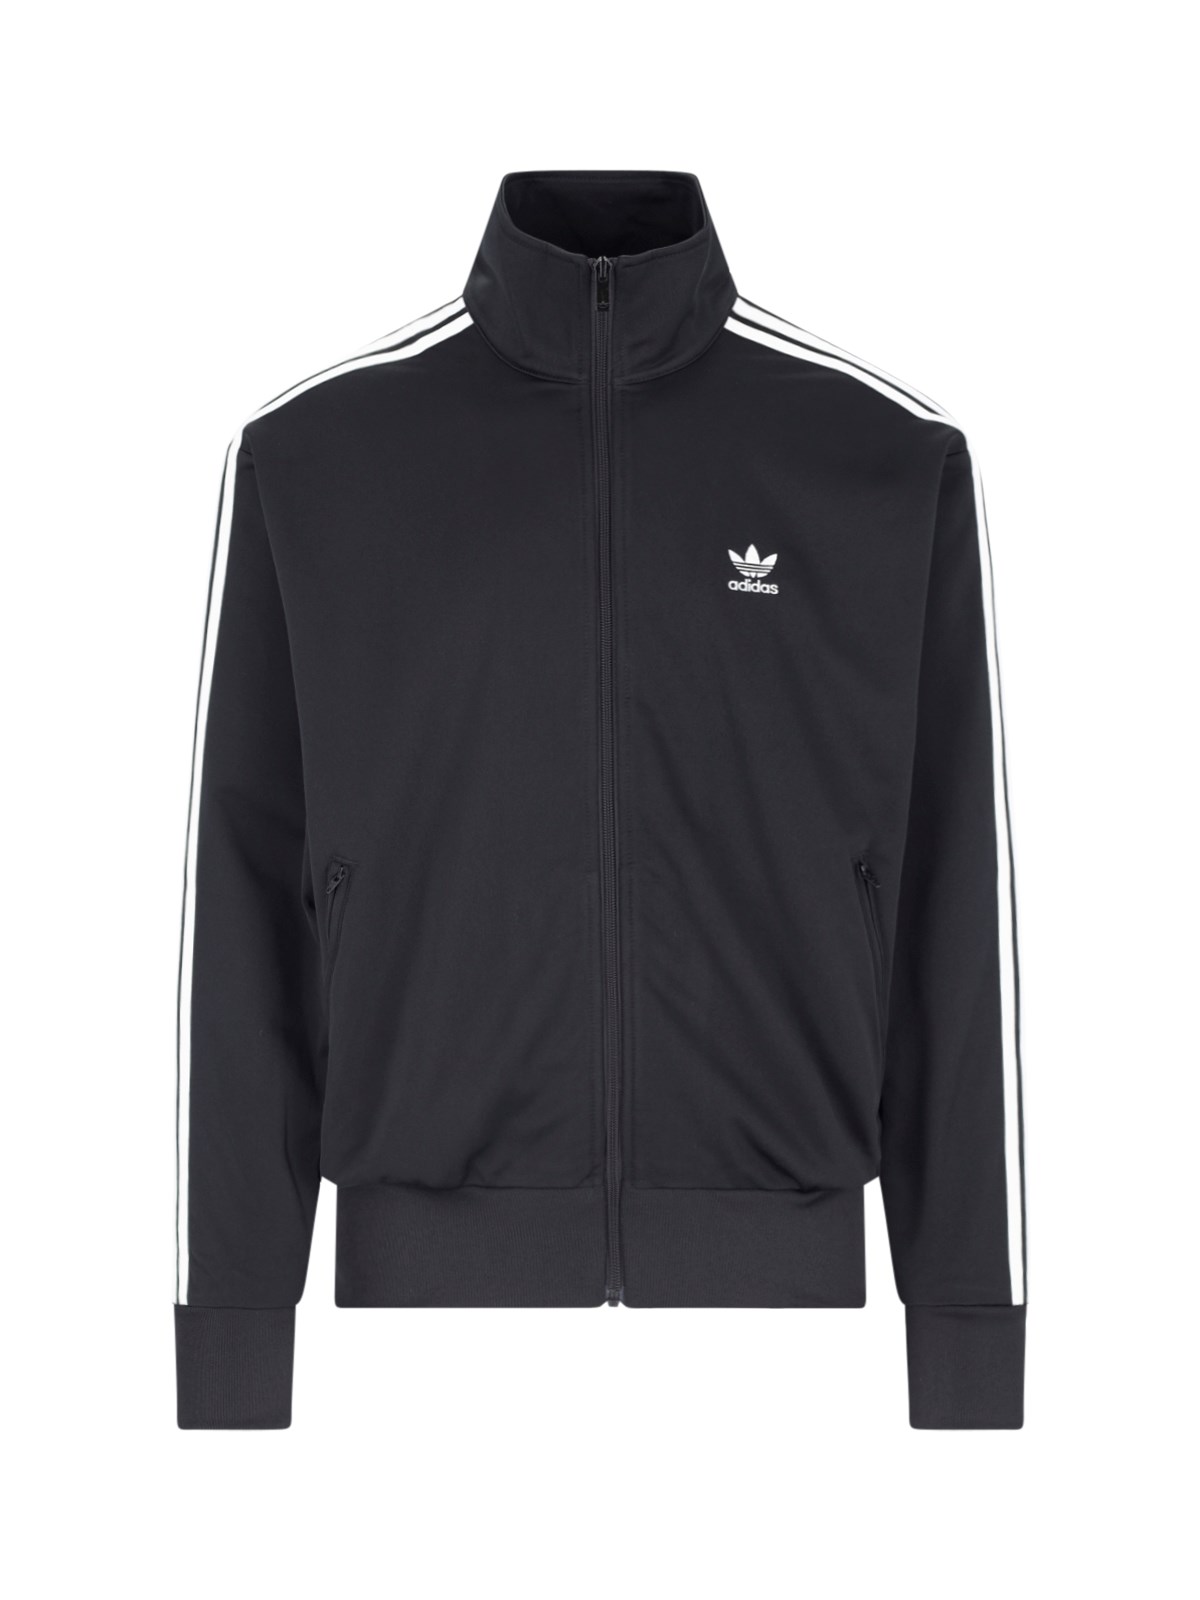 Adidas Originals "adicol Classics" Zip Sweatshirt In Black  